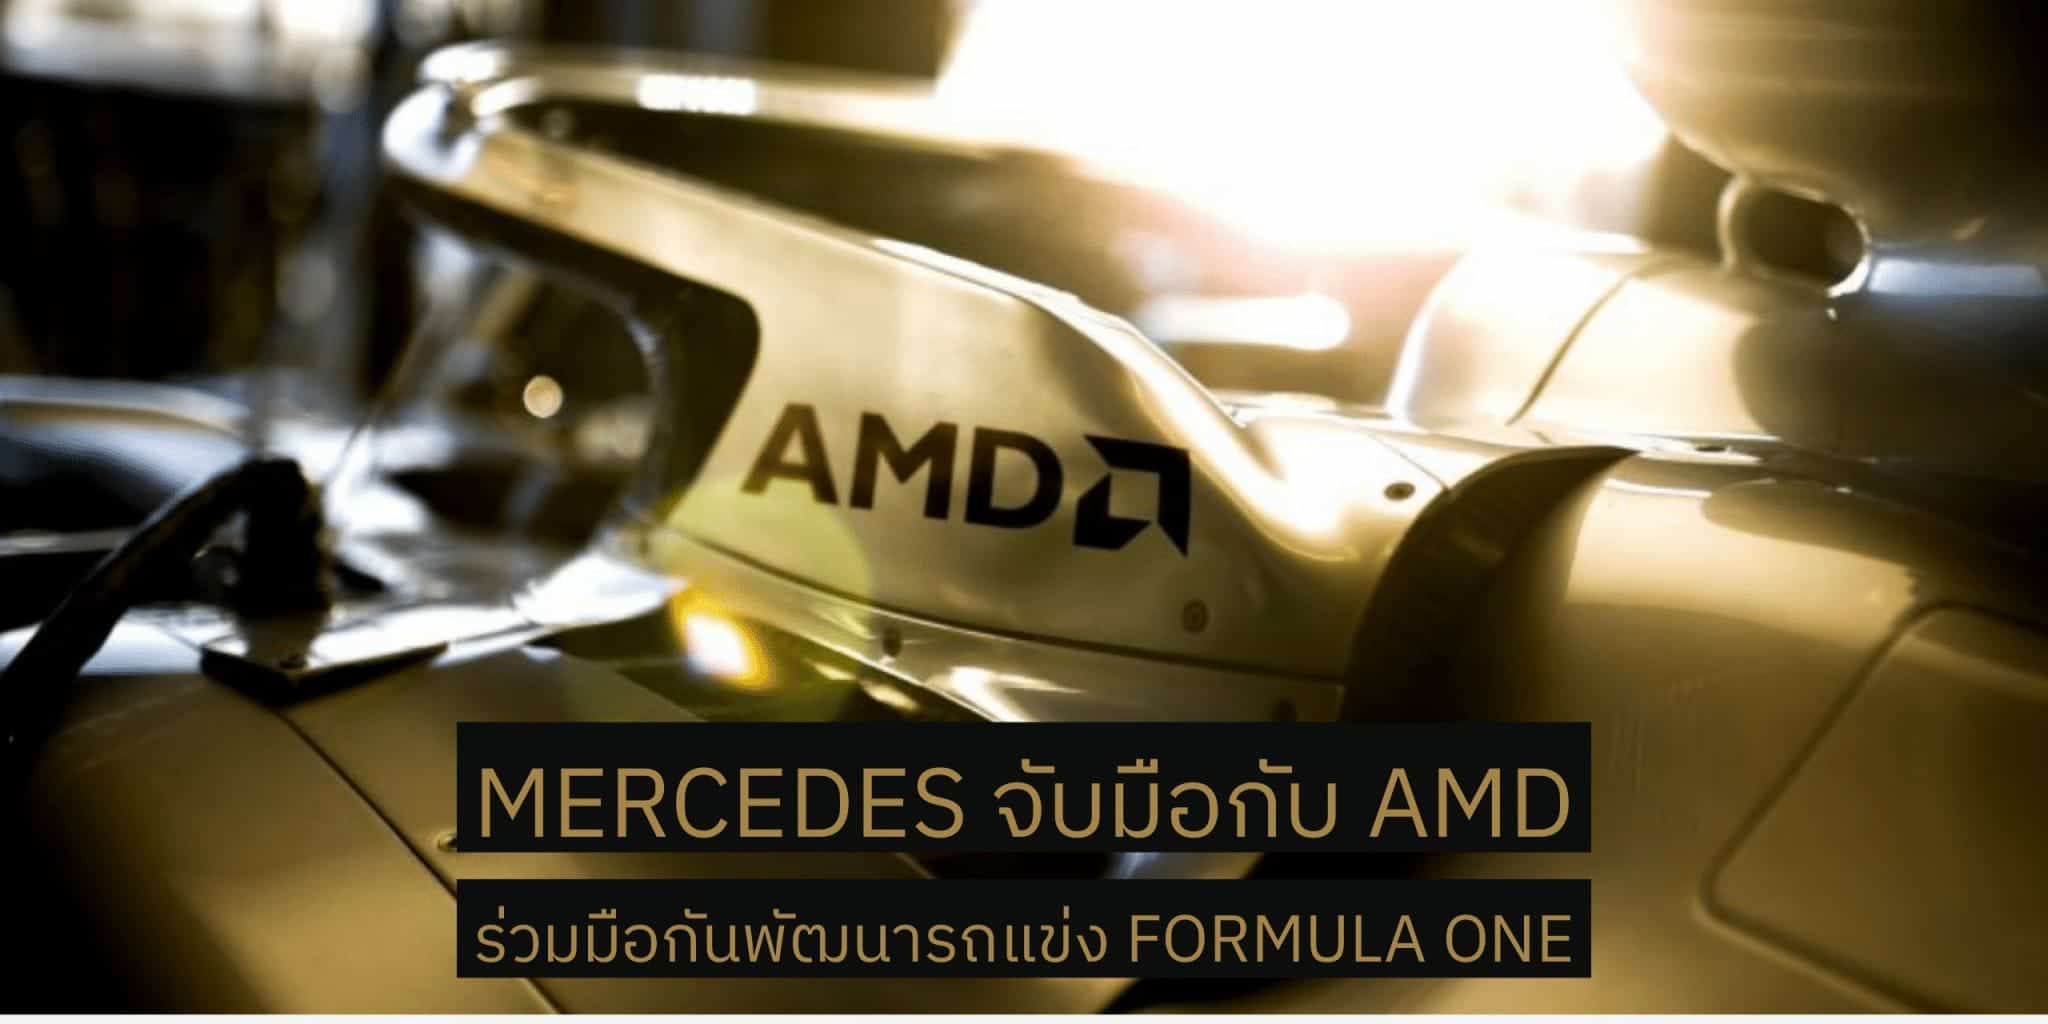 Mercedes จับมือกับ AMD ประกาศความเป็นพันธมิตรในระยะยาวเพื่อร่วมพัฒนารถแข่ง Formula One 1